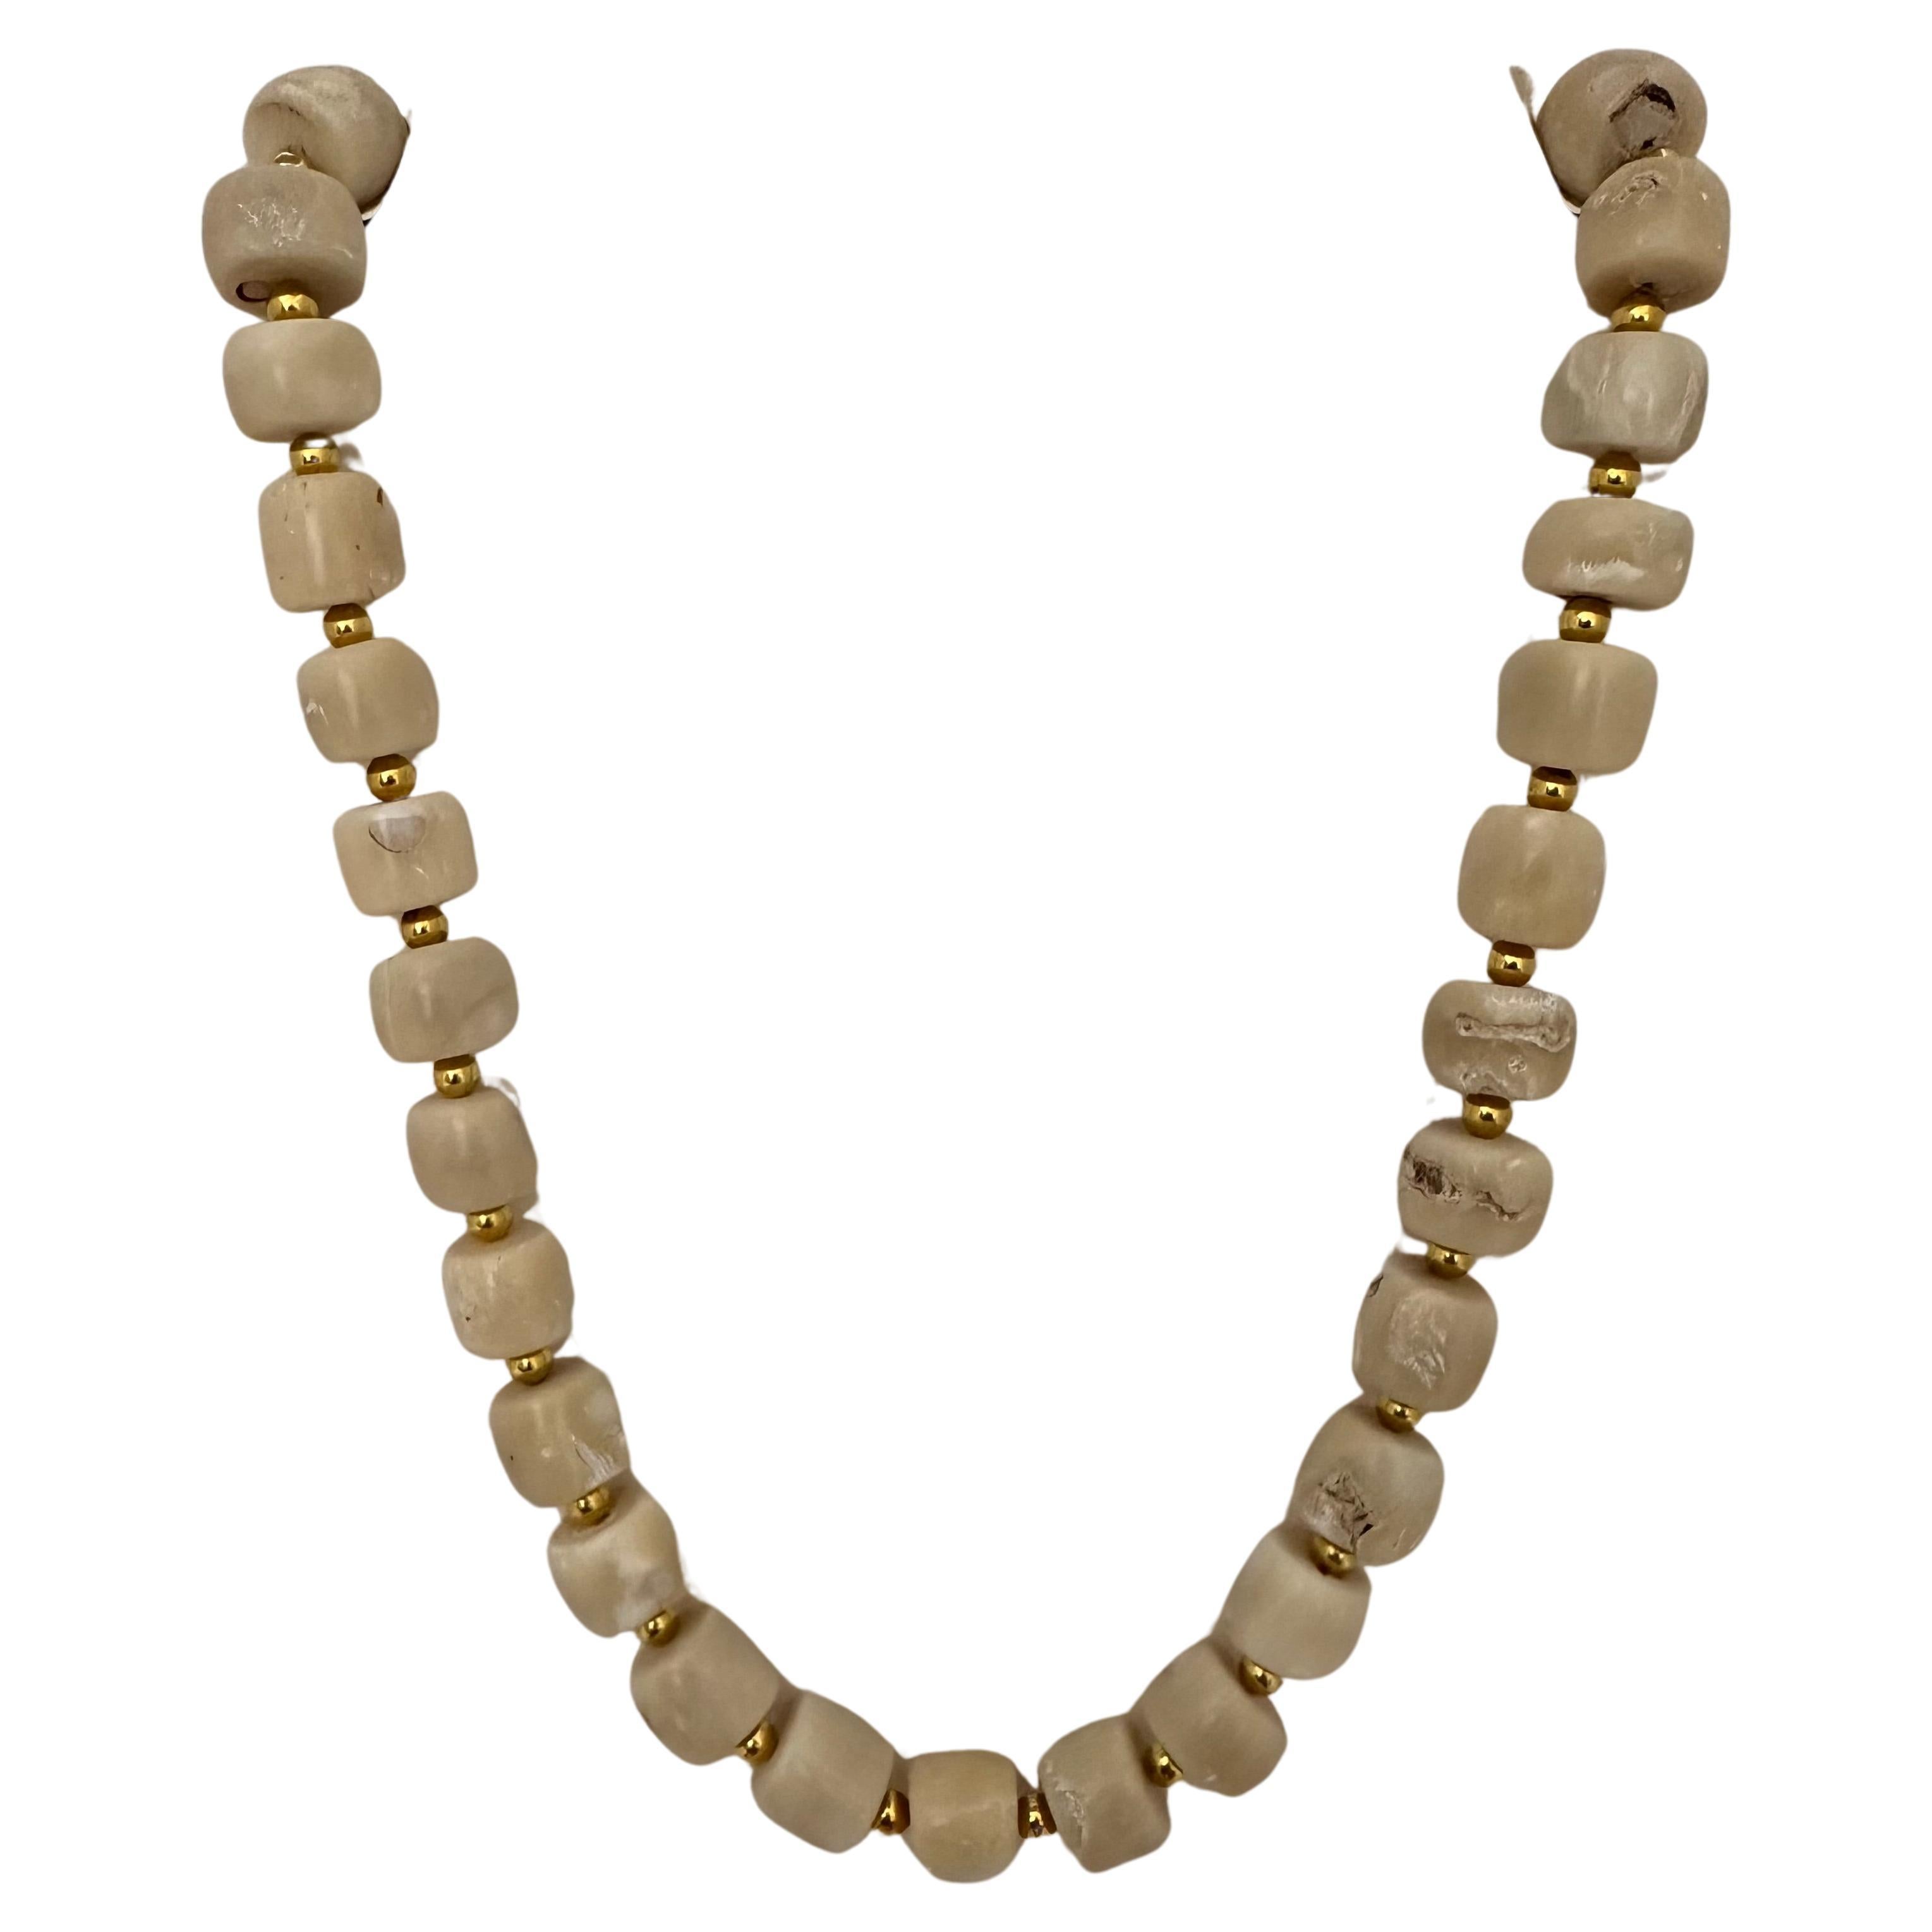 Handgefertigte 25" Halskette aus Gold und weißer Koralle in Fassform mit Perlen #C25